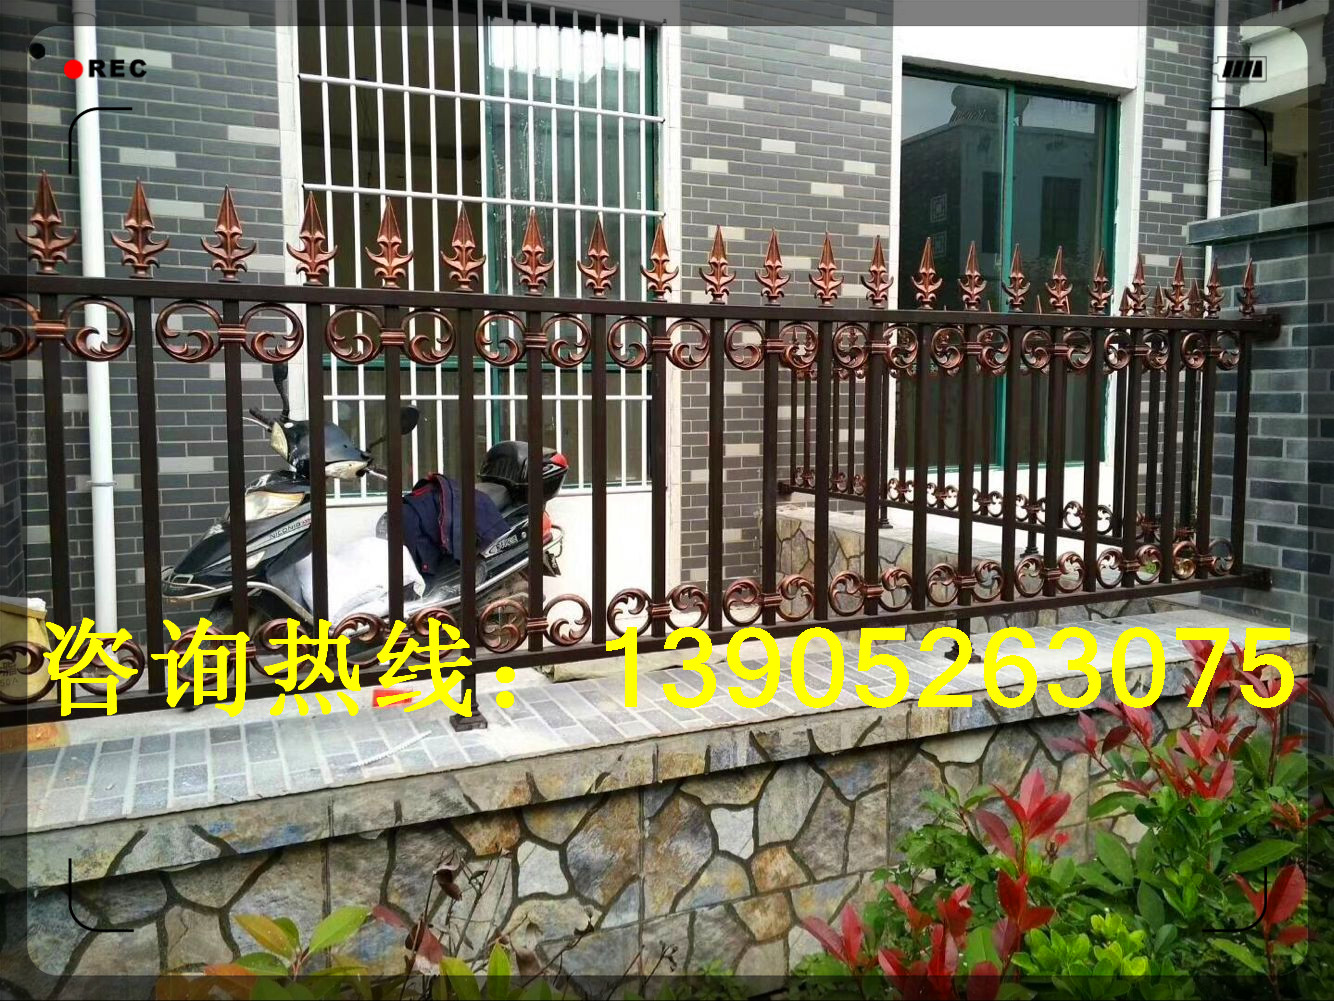 泰州扬州铸铝围栏护栏铝艺大门厂家泰州扬州铸铝围栏护栏铝艺大门厂家